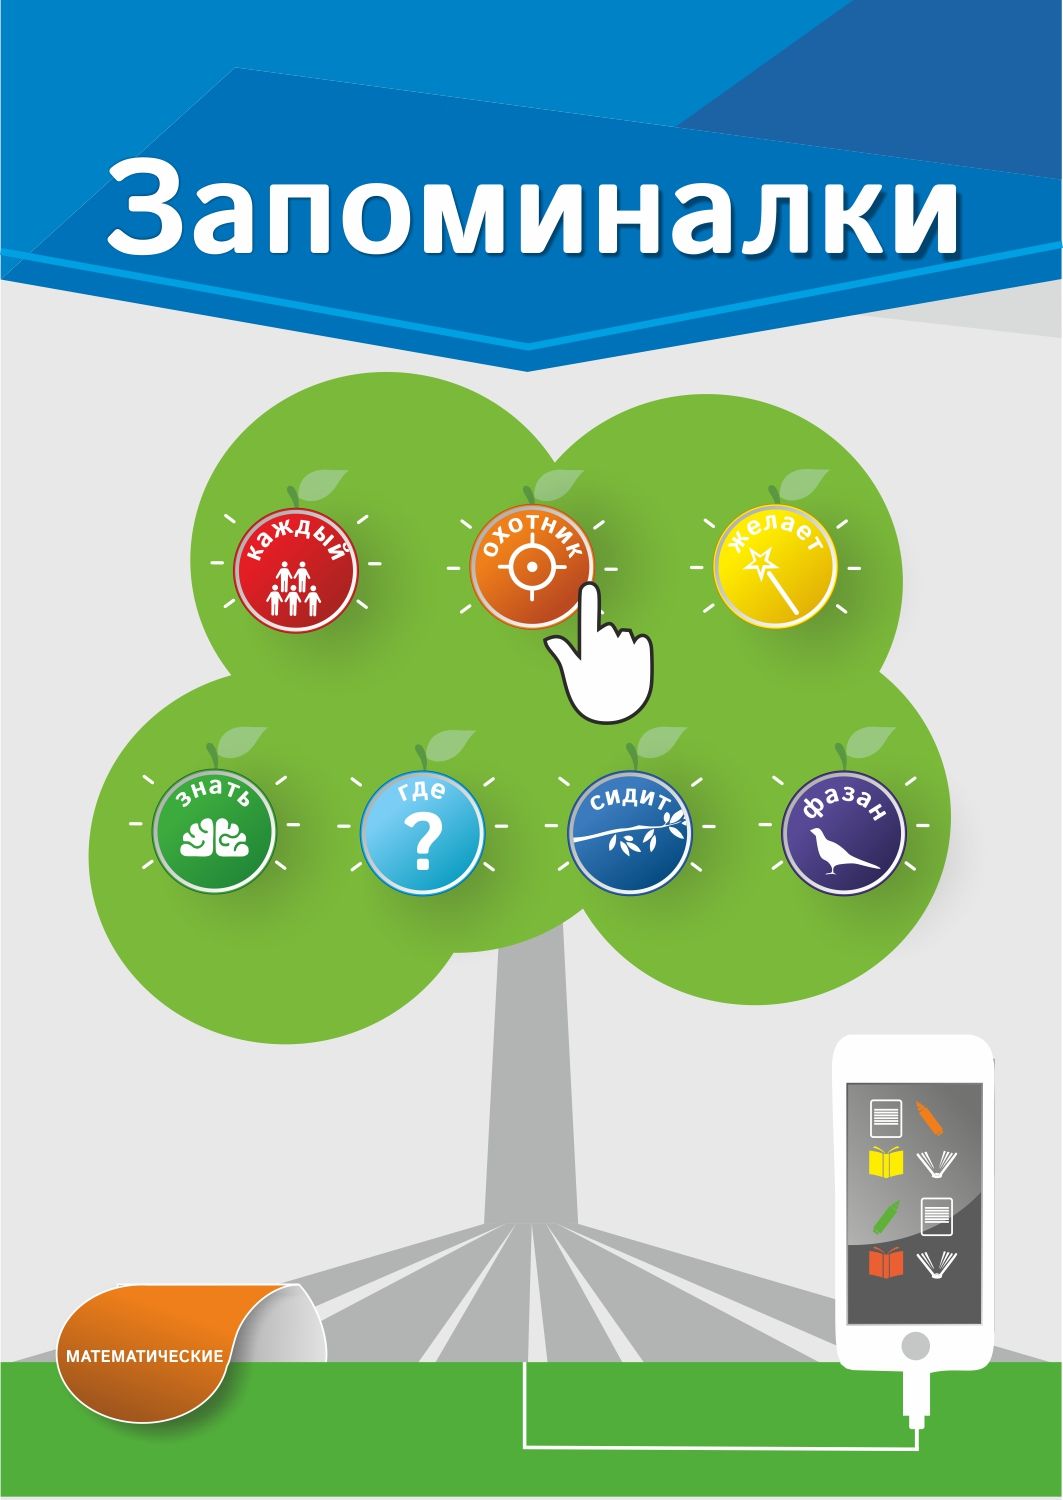 Обложка для электронной книги с запоминалками - дизайнер OlgaAI